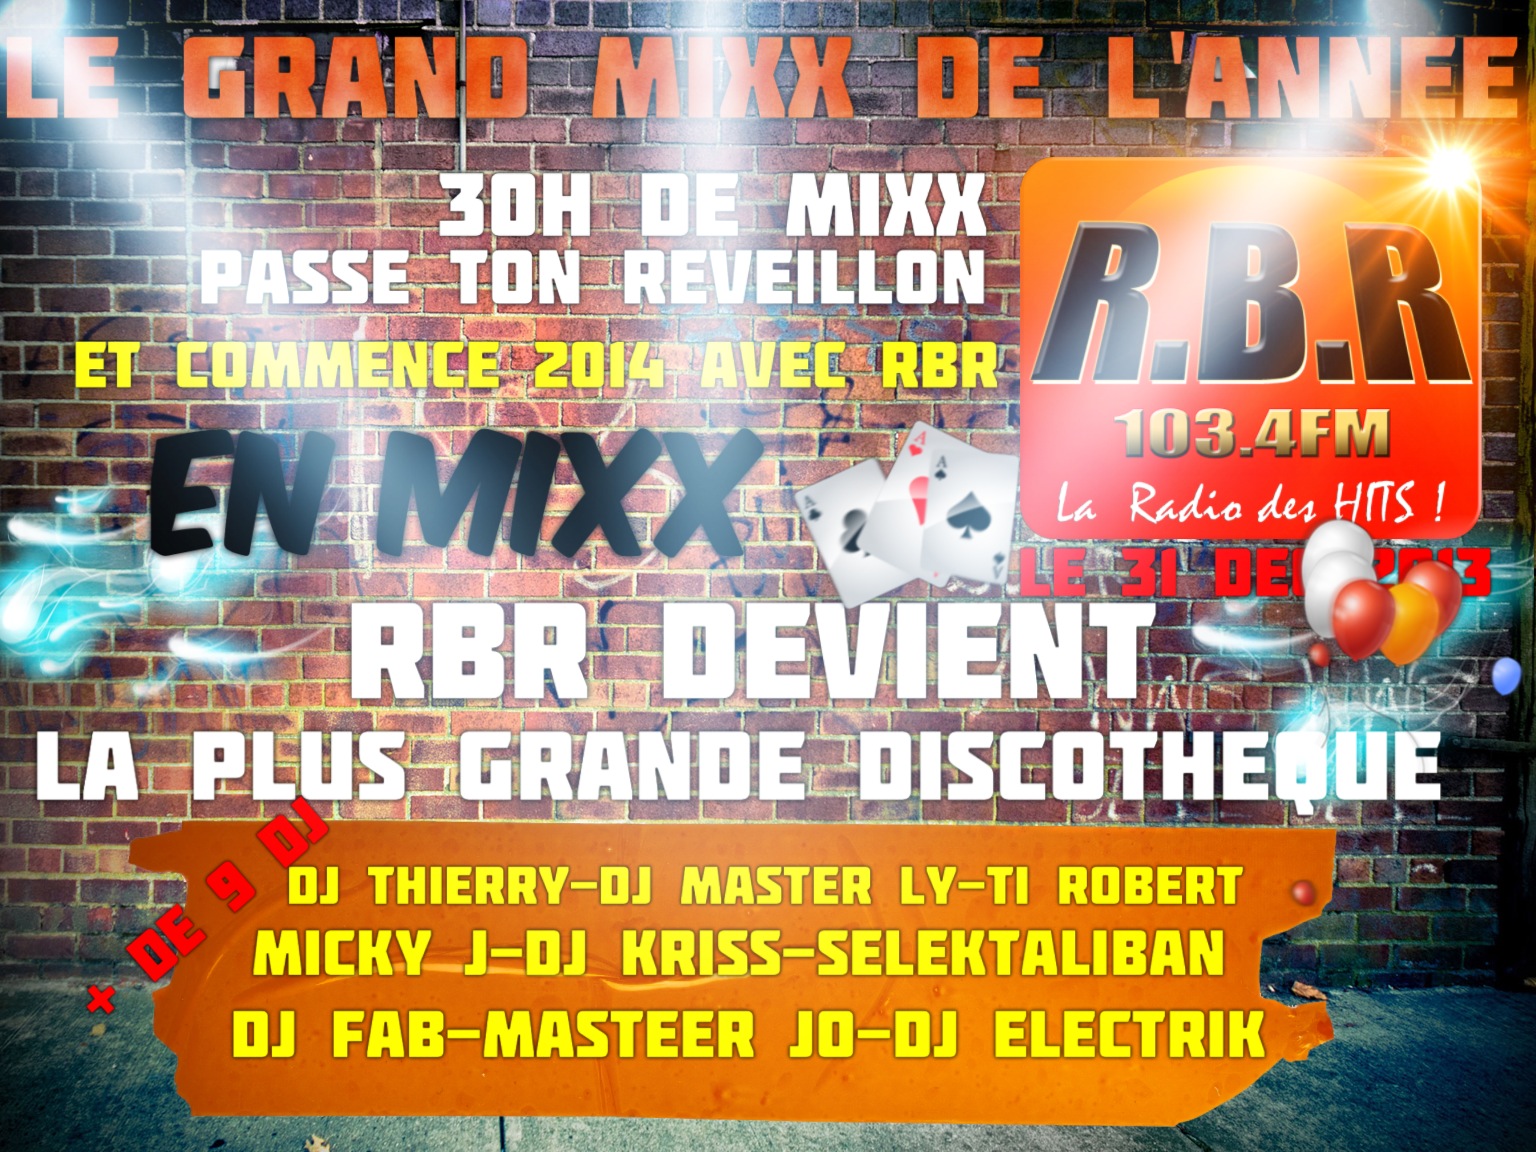 Radio Banlieue Relax, la radio de la cité DILLON, à Fort de France annonce LE GRAND MIXX DE L’ANNEE - 30h de mix non-stop sur RBR